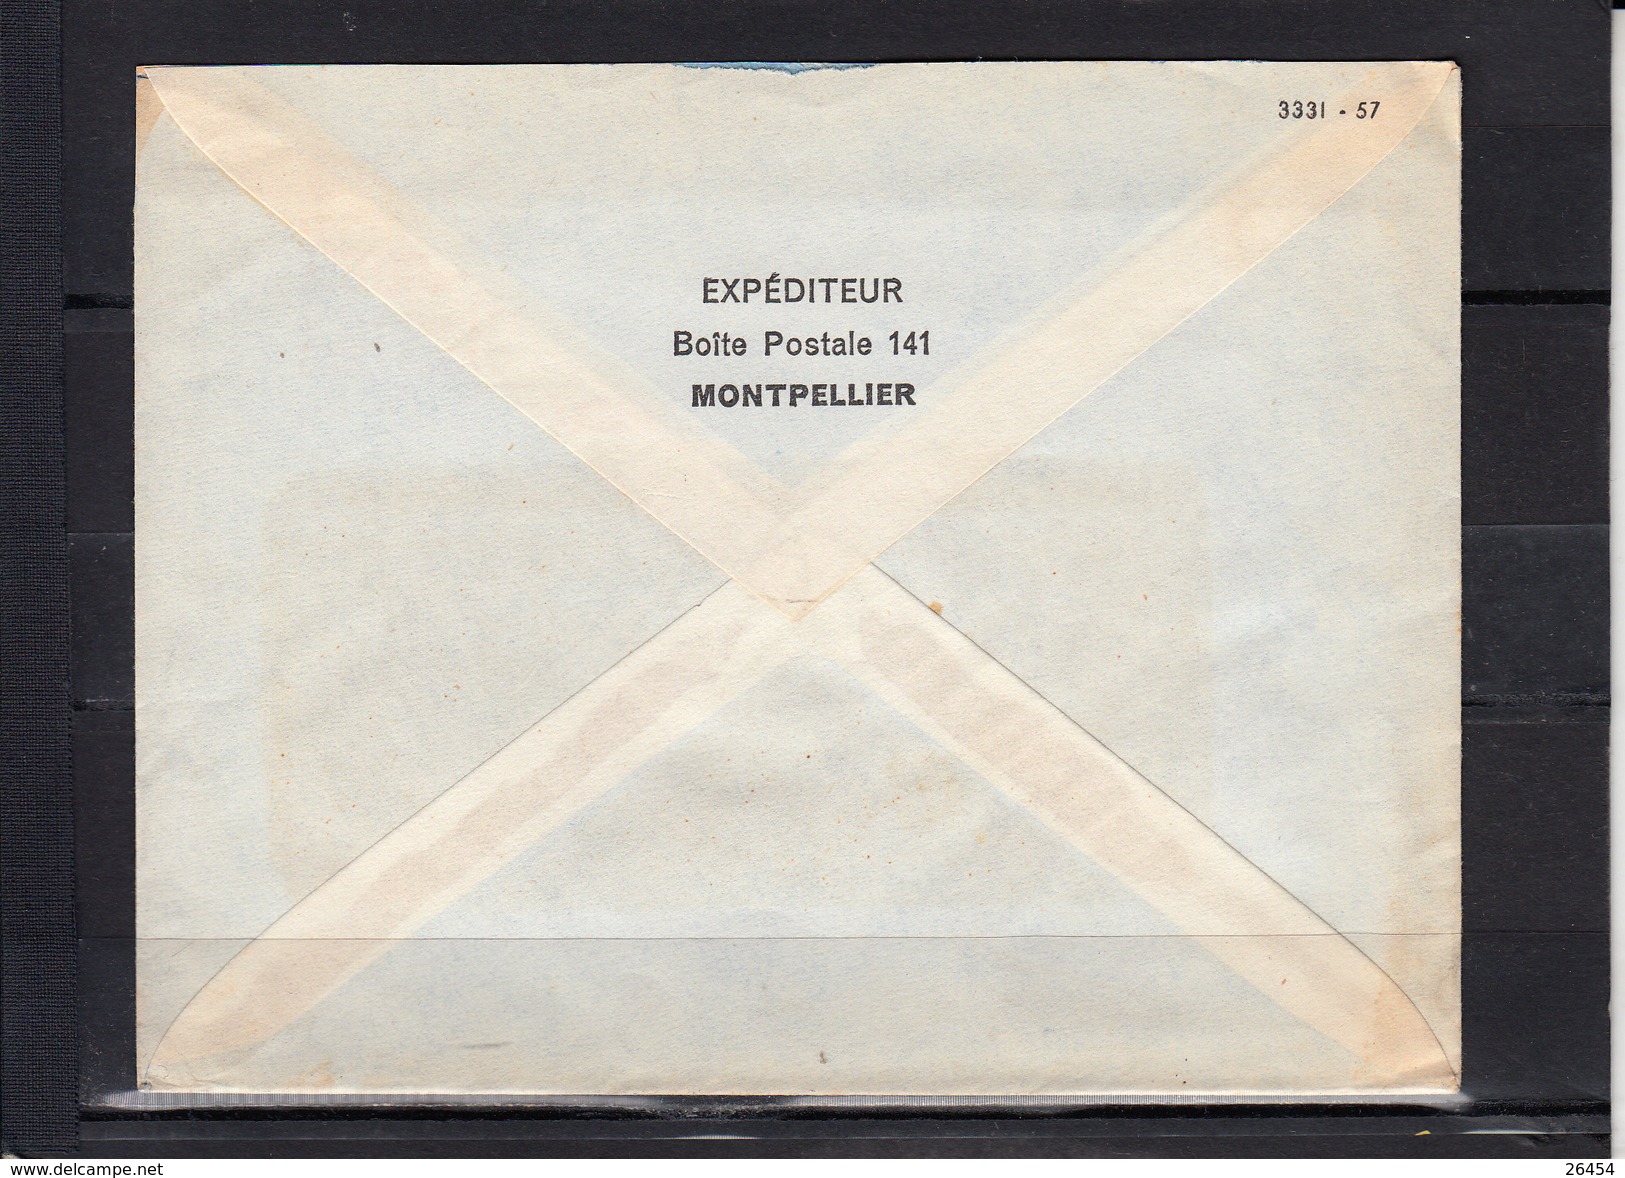 20   EMA   sur lettre  de FRANCE sauf  PARIS     annees 1956  1957 et 1958